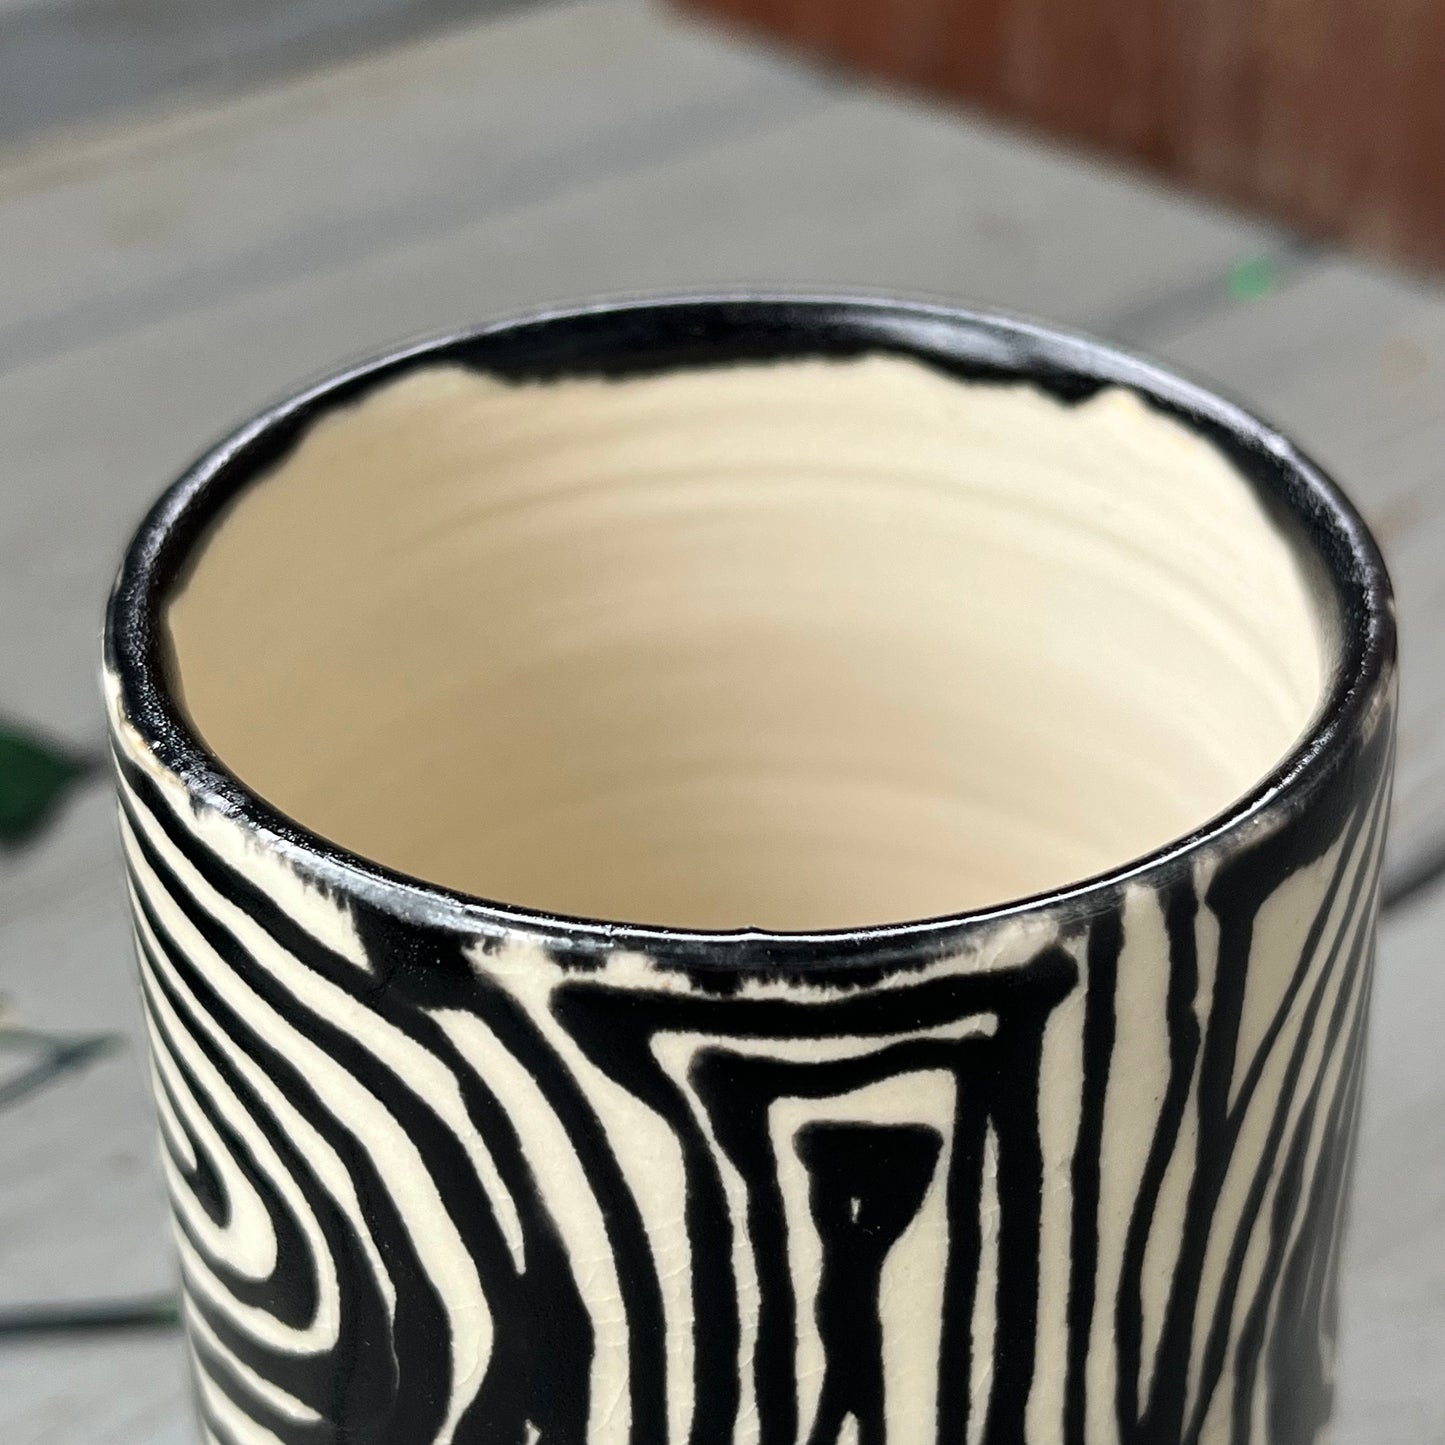 Ceramic Vase White with Custom Black Design  | Mother’s Day gift for flowers